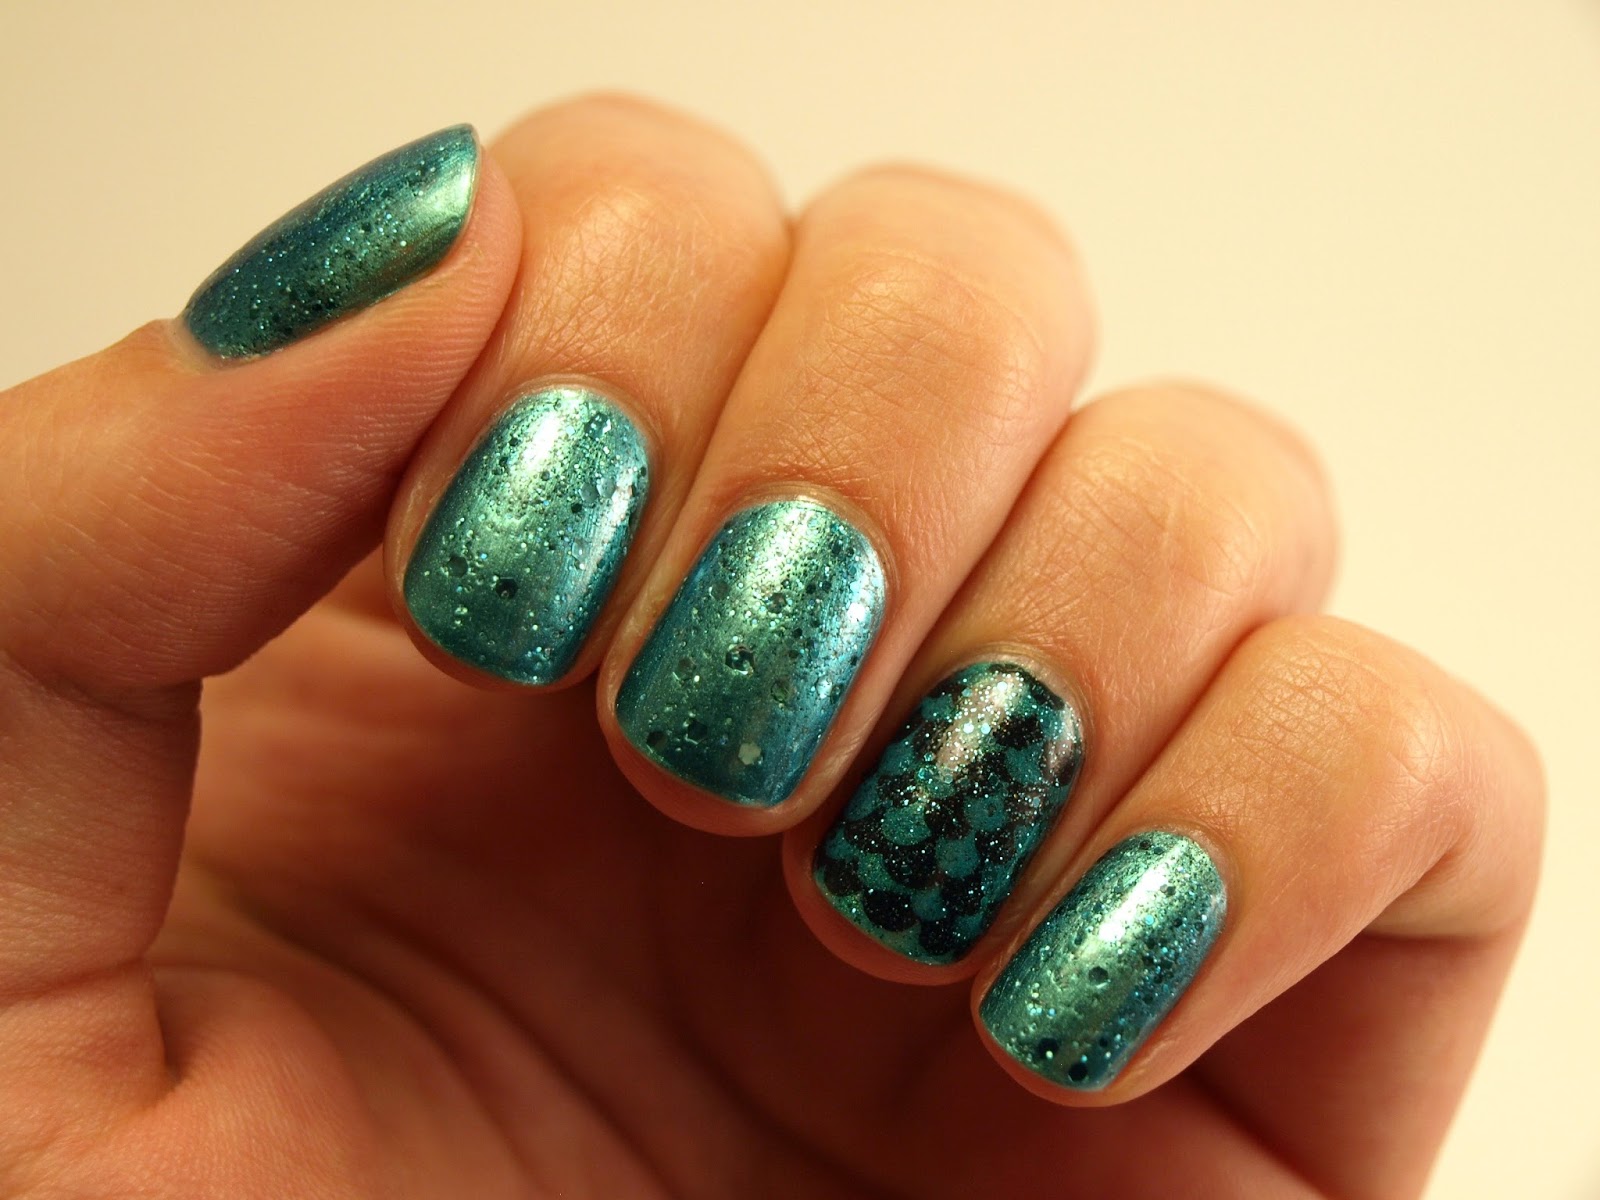 Green nail polish - wide 2